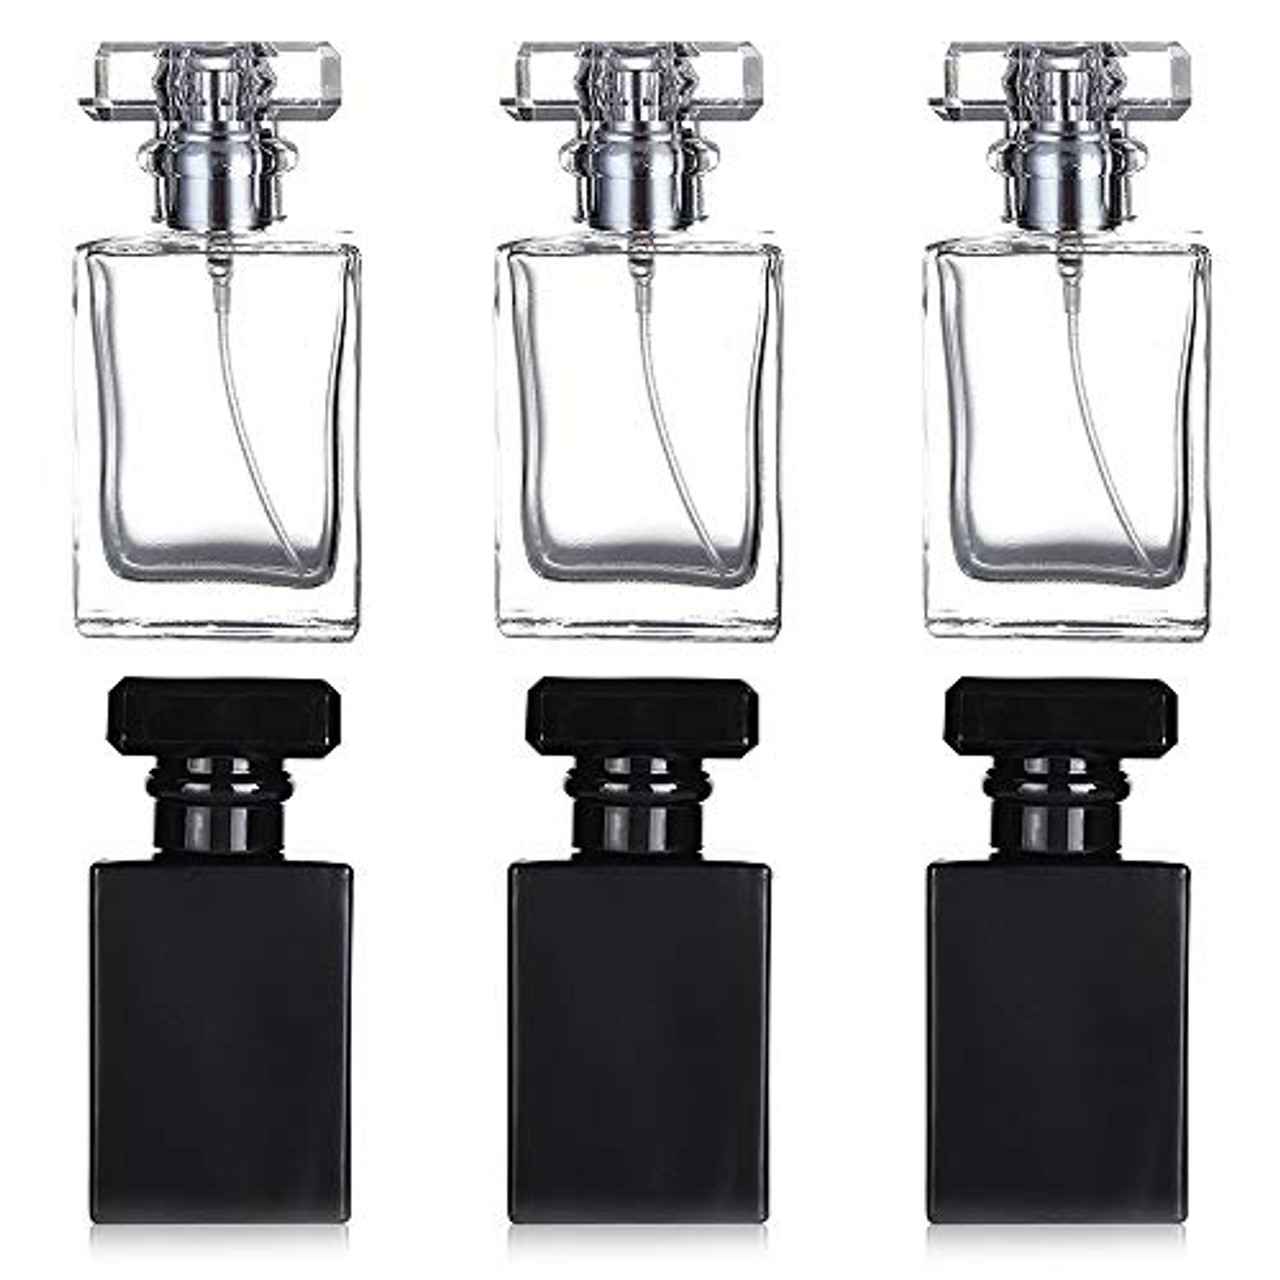 Black Perfume Bottles - New Fragrances in Black Bottles